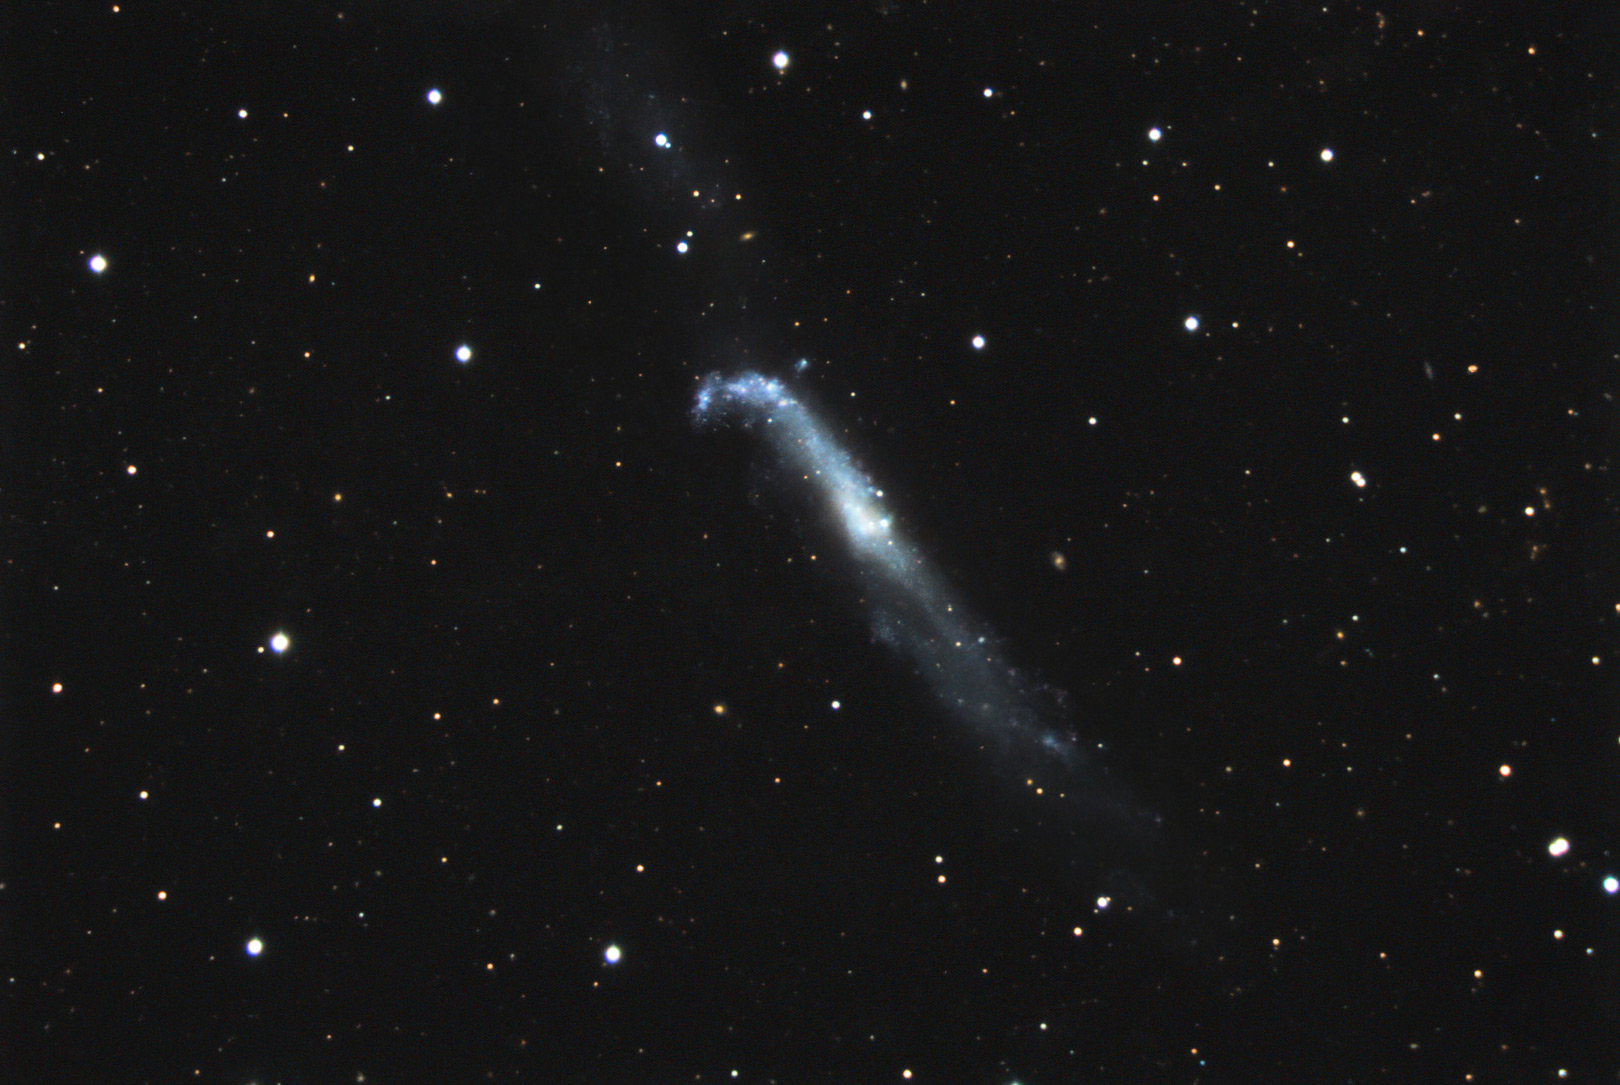 NGC4656